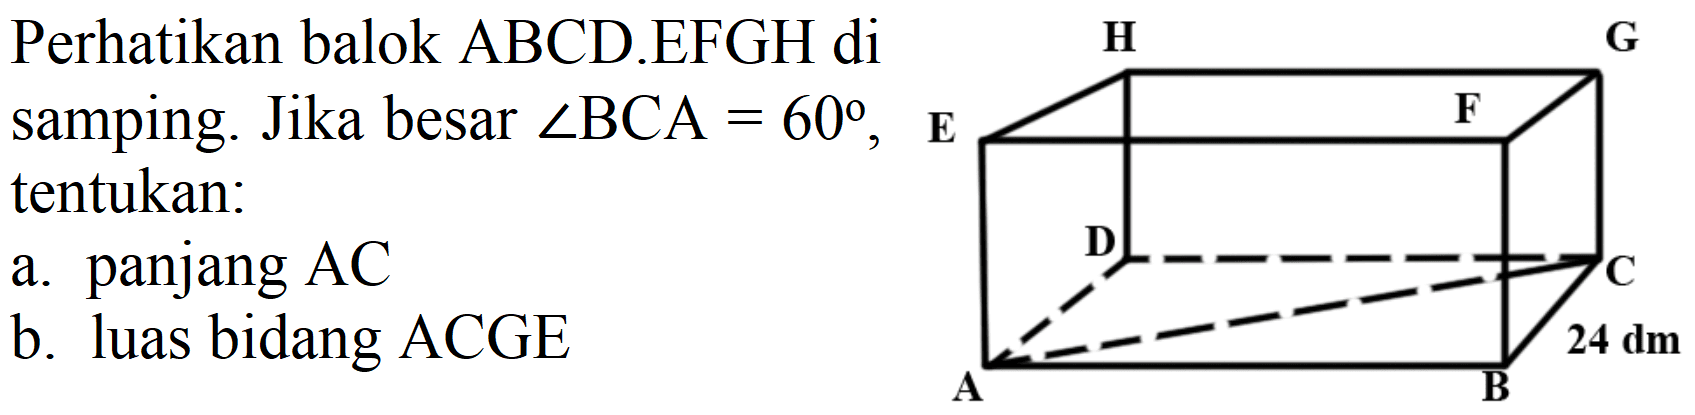 Perhatikan balok ABCD.EFGH di samping. Jika besar  sudut B C A=60 , E tentukan:
a. panjang  AC 
b. luas bidang ACGE